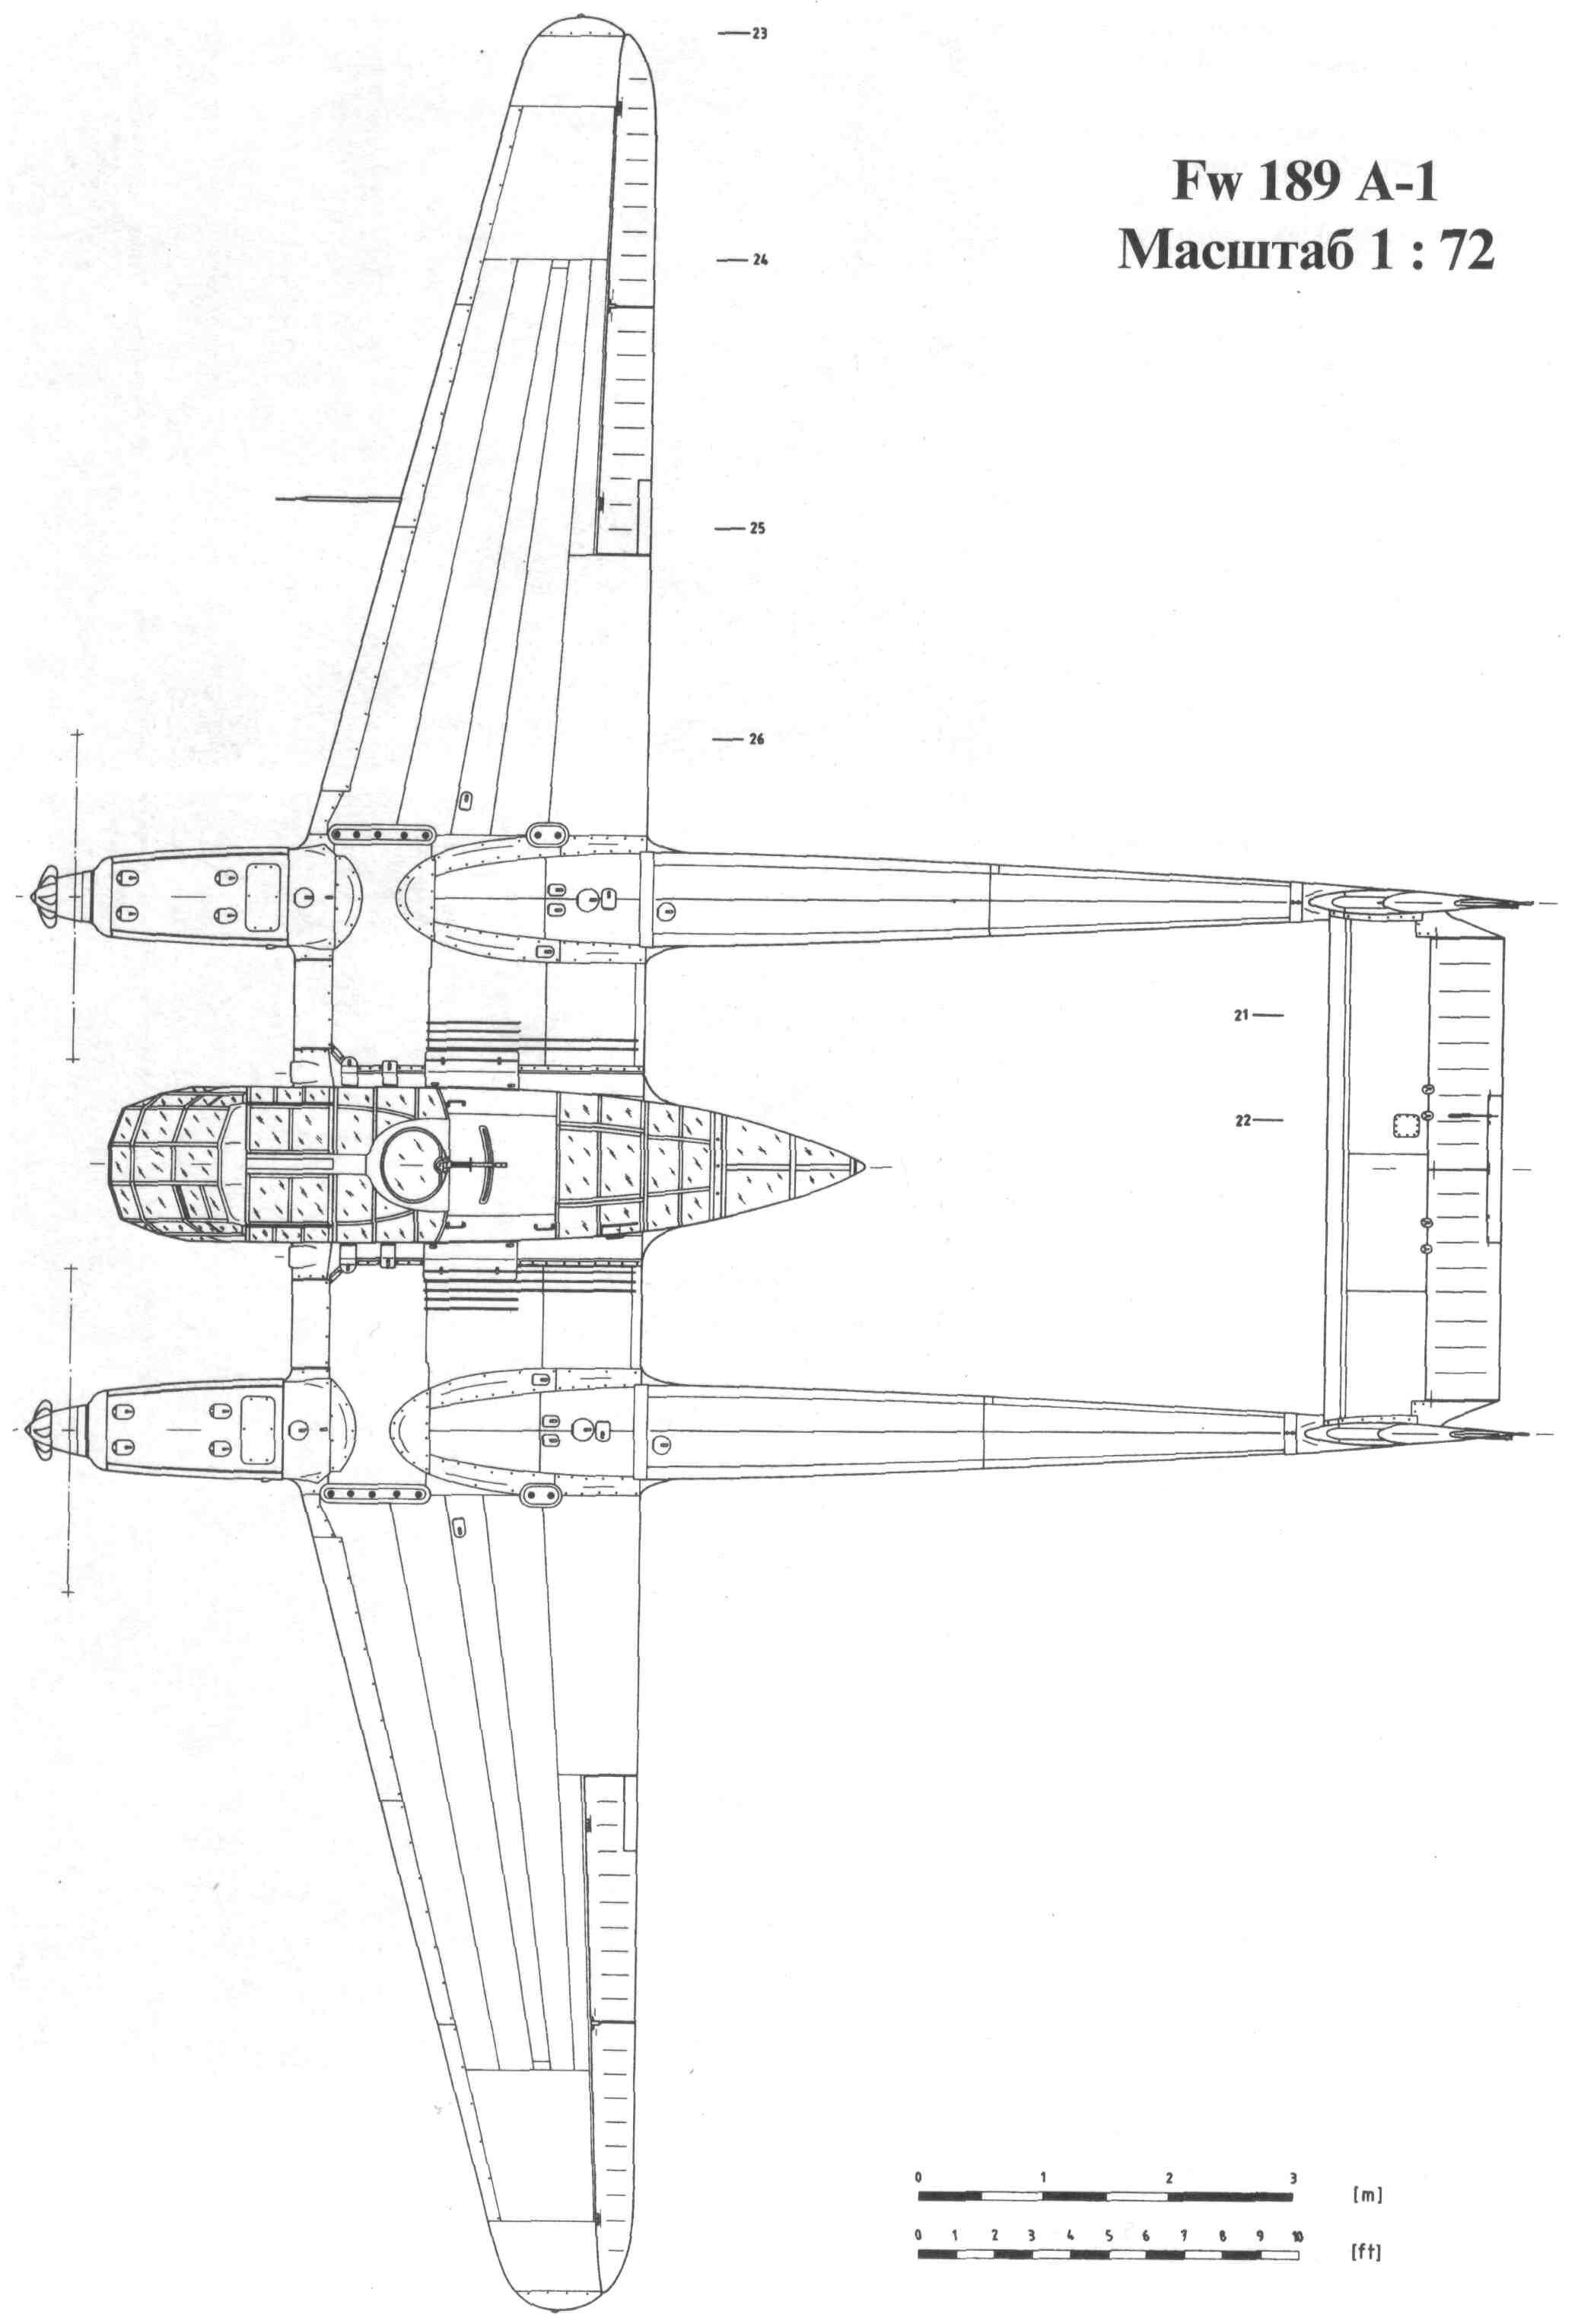 Fw 189 Uhu blueprint